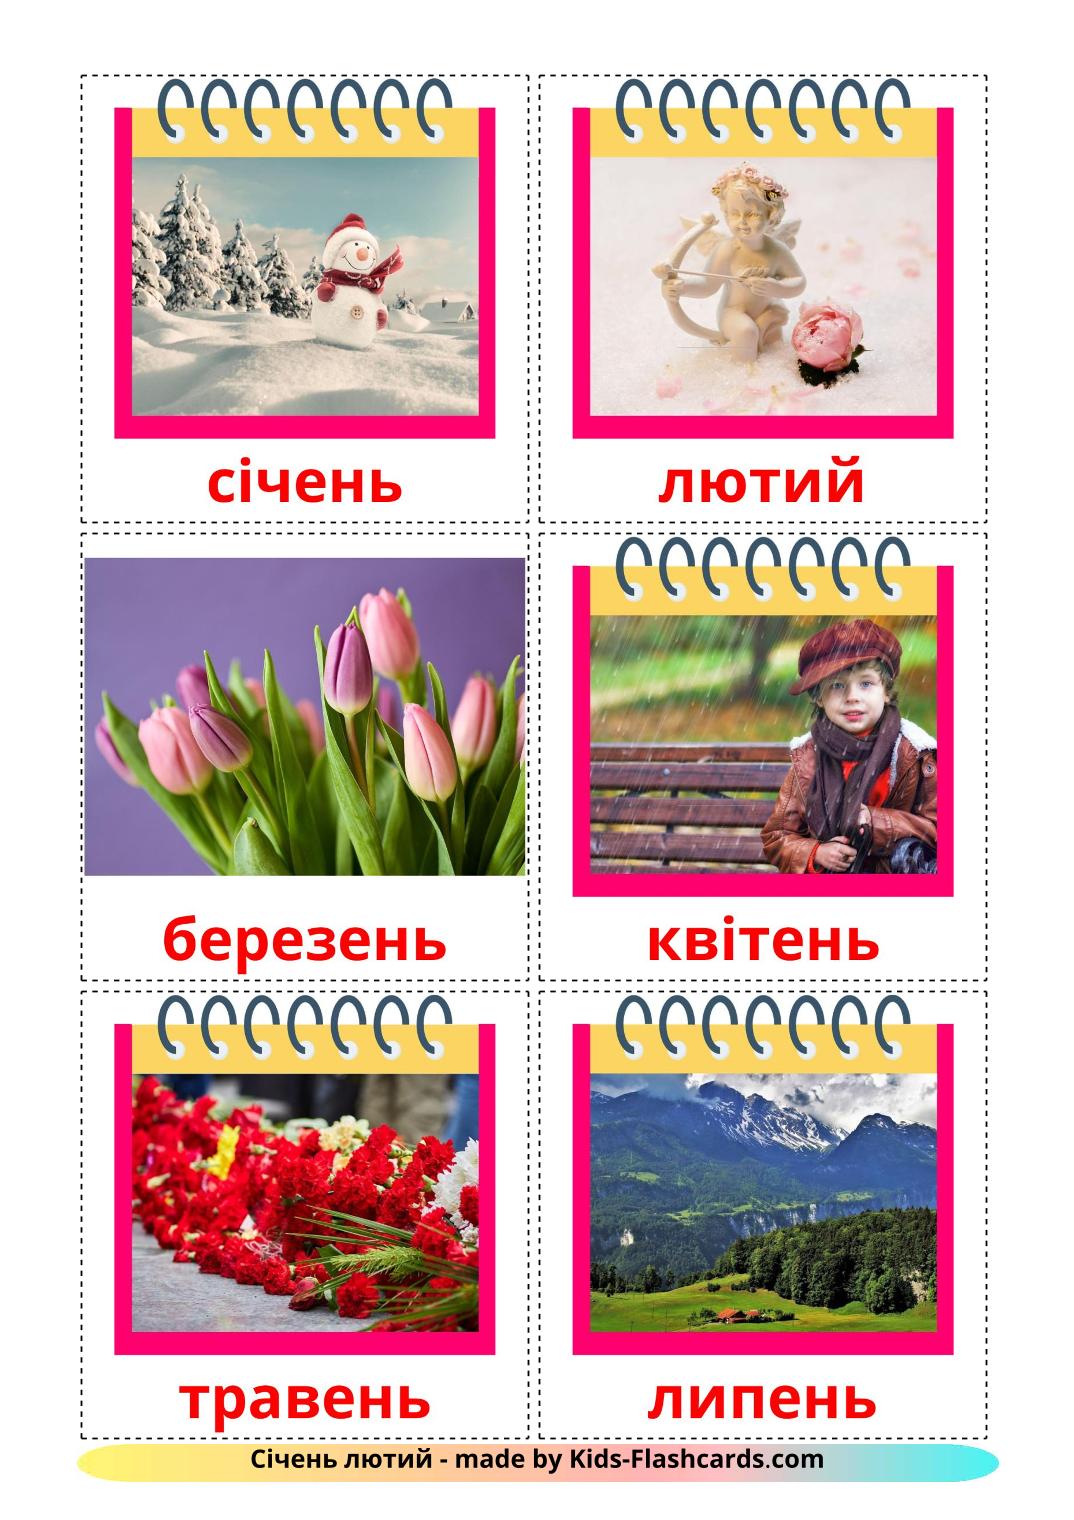 Maanden van het jaar - 12 gratis printbare oekraïense kaarten